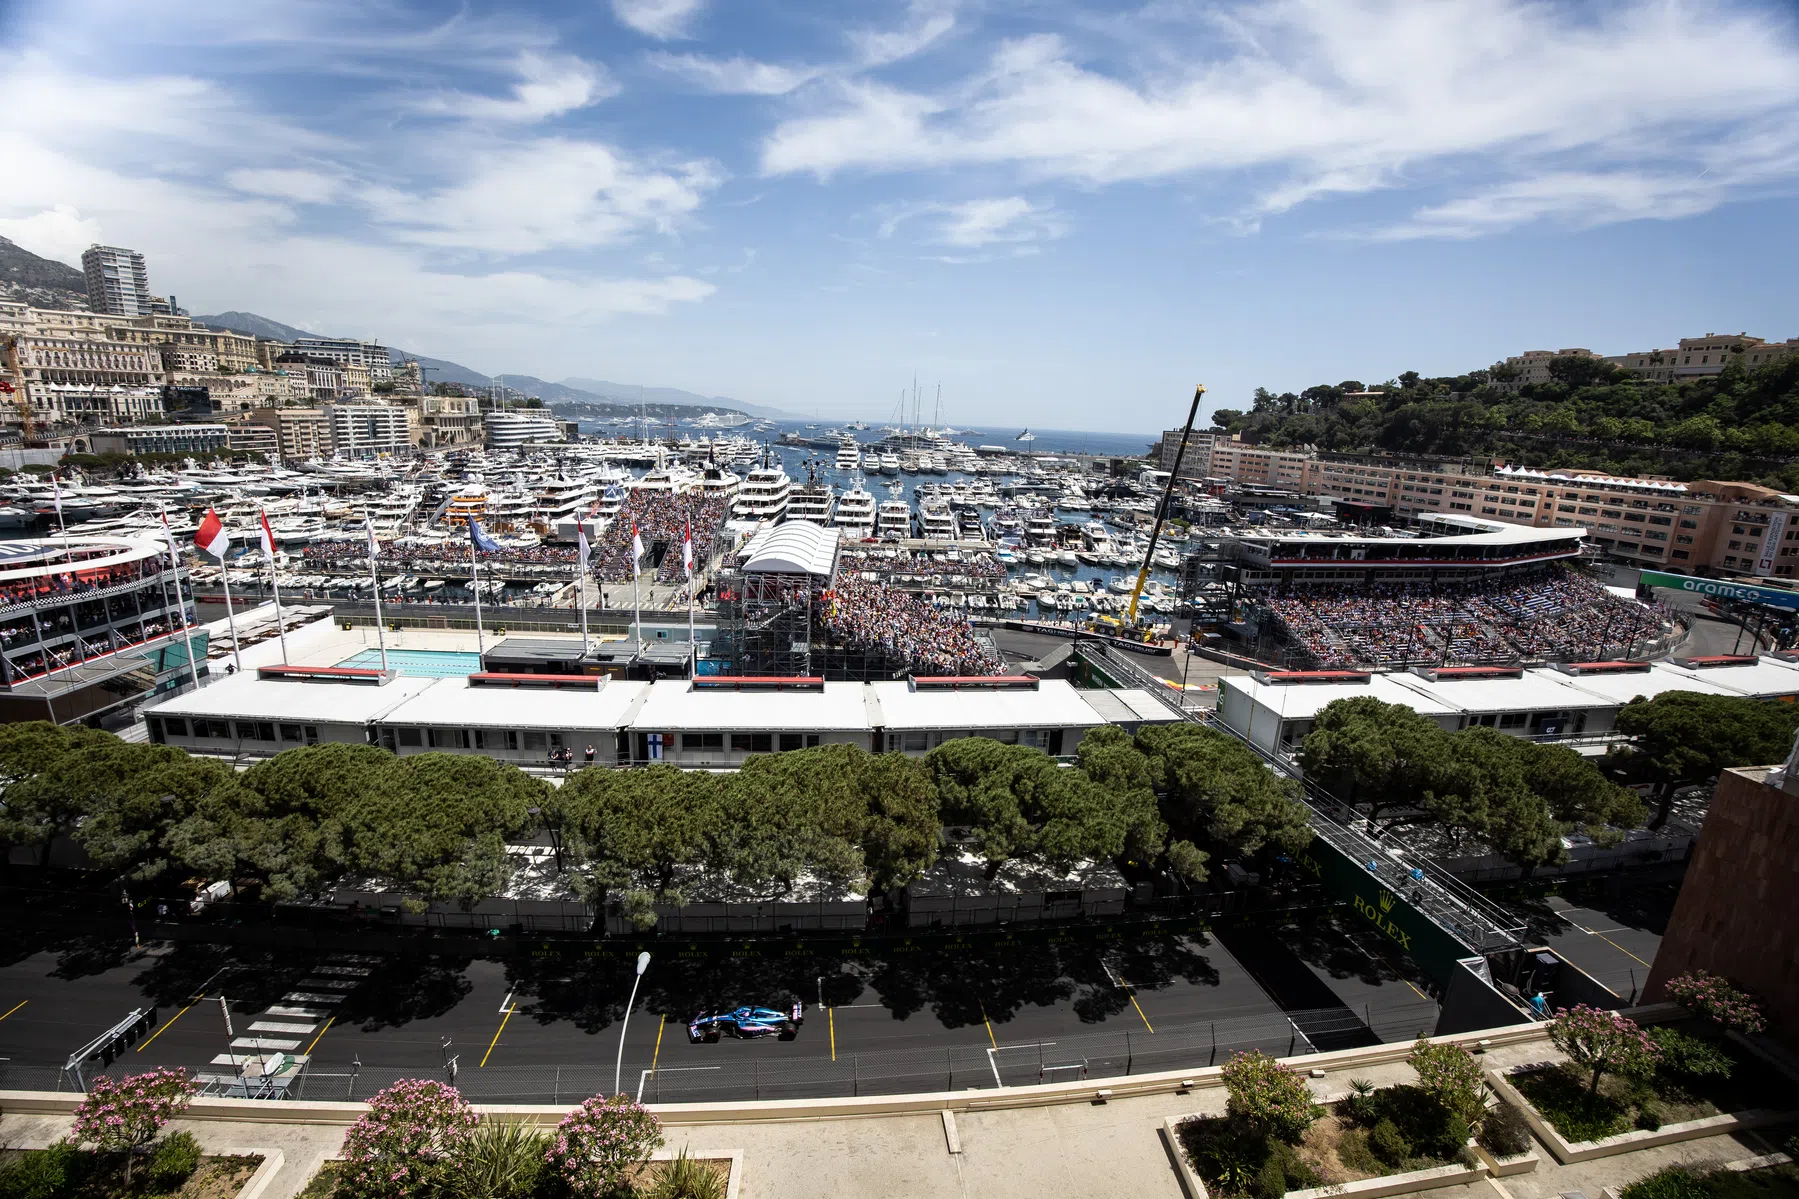 F1 drivers who live in Monaco